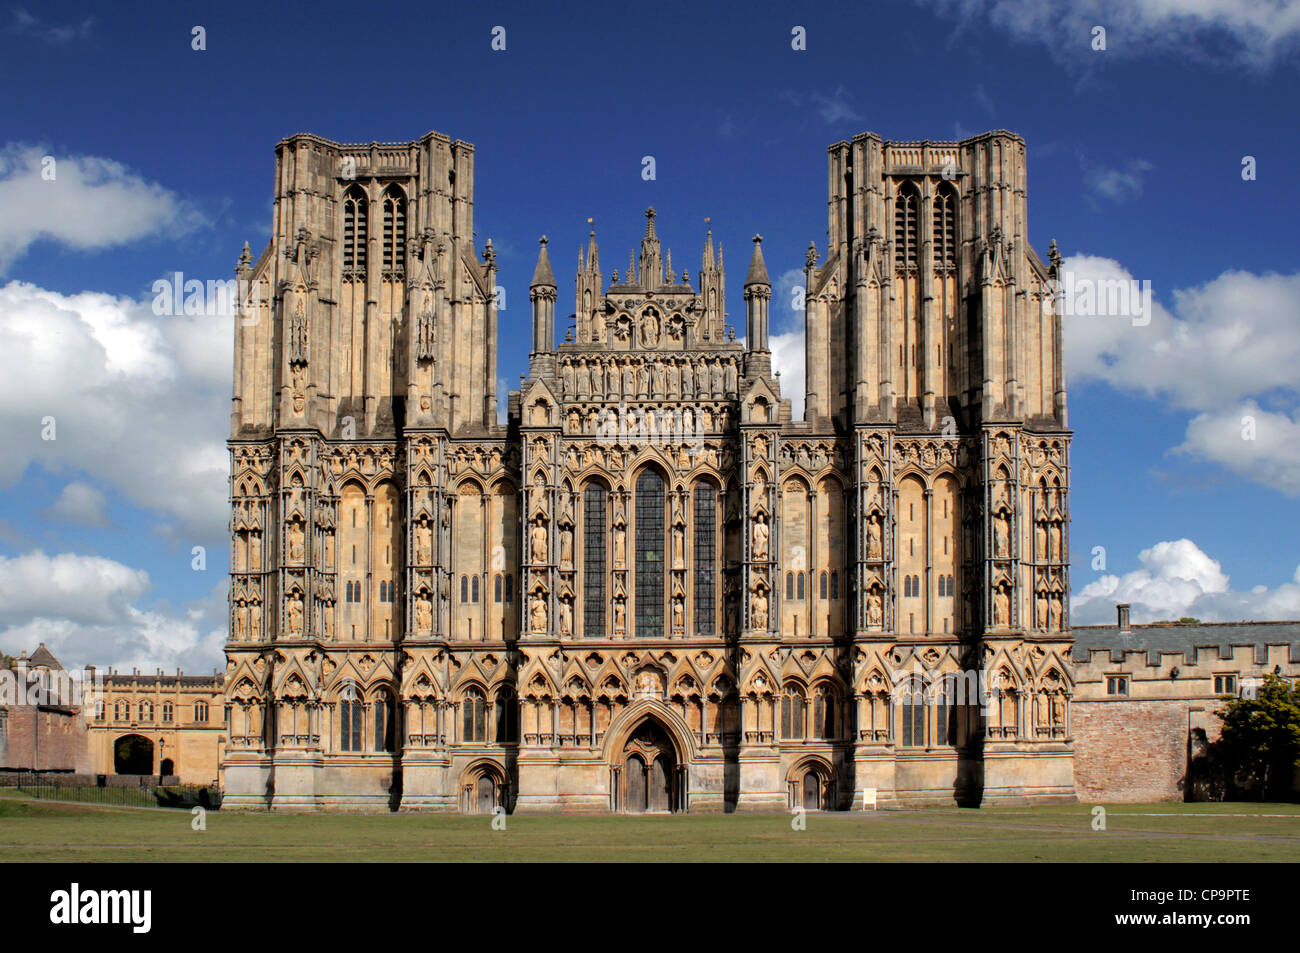 Avant de l'ouest de la cathédrale de Wells, Somerset, England, UK Banque D'Images